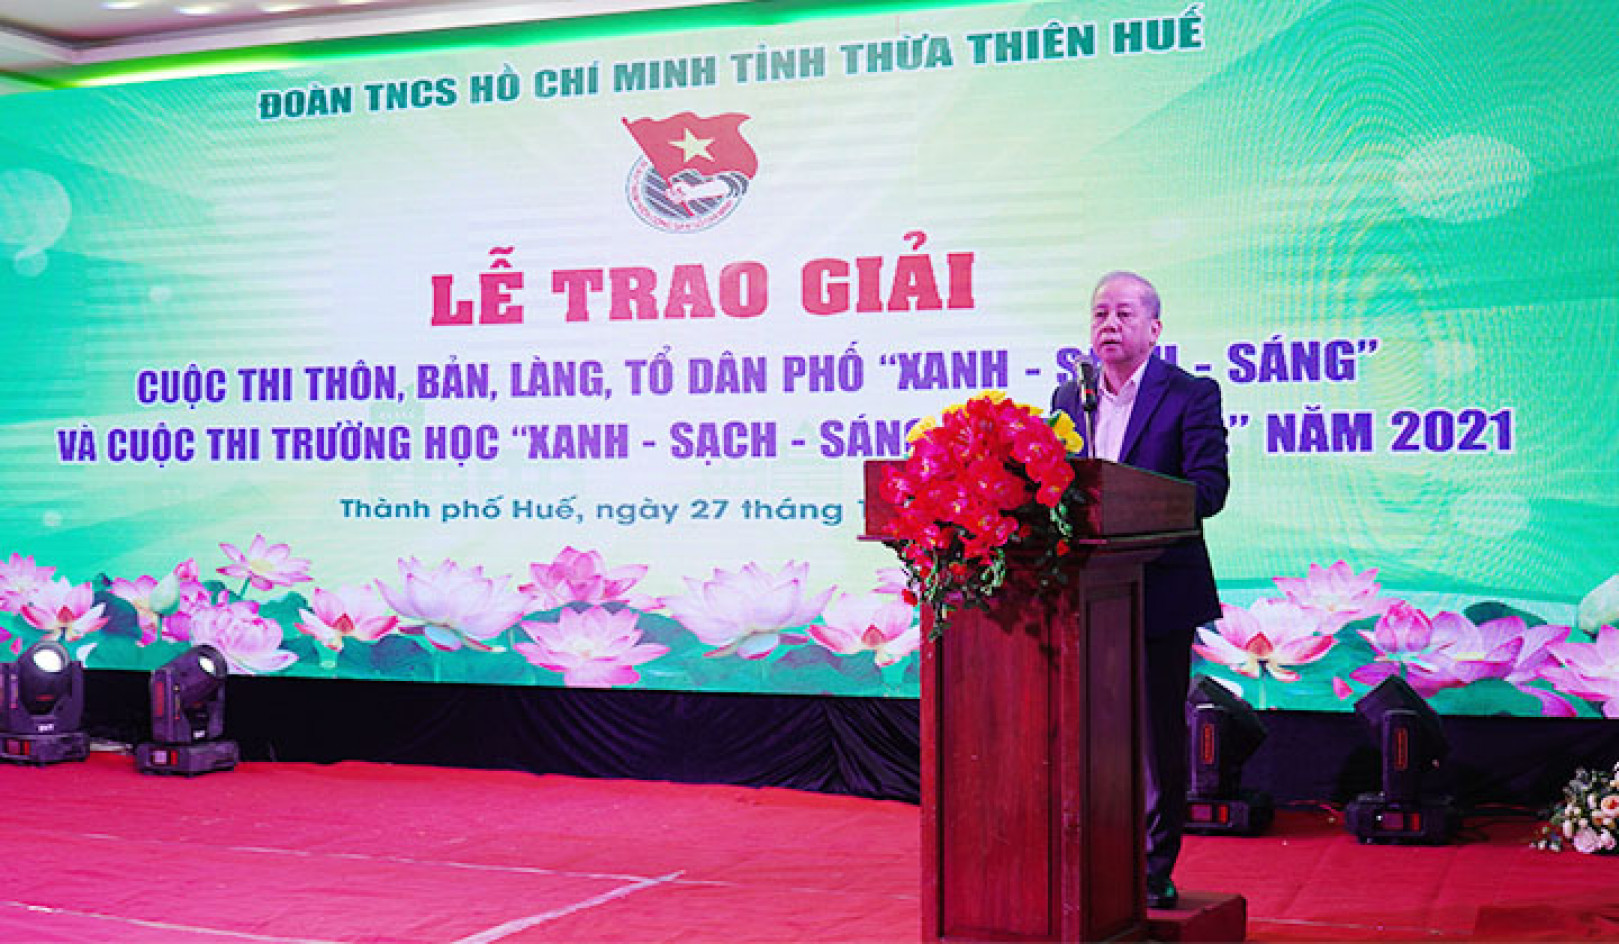 Phó Bí thư Thường trực Tỉnh ủy Thừa Thiên - Huế Phan Ngọc Thọ phát biểu tại buổi lễ.